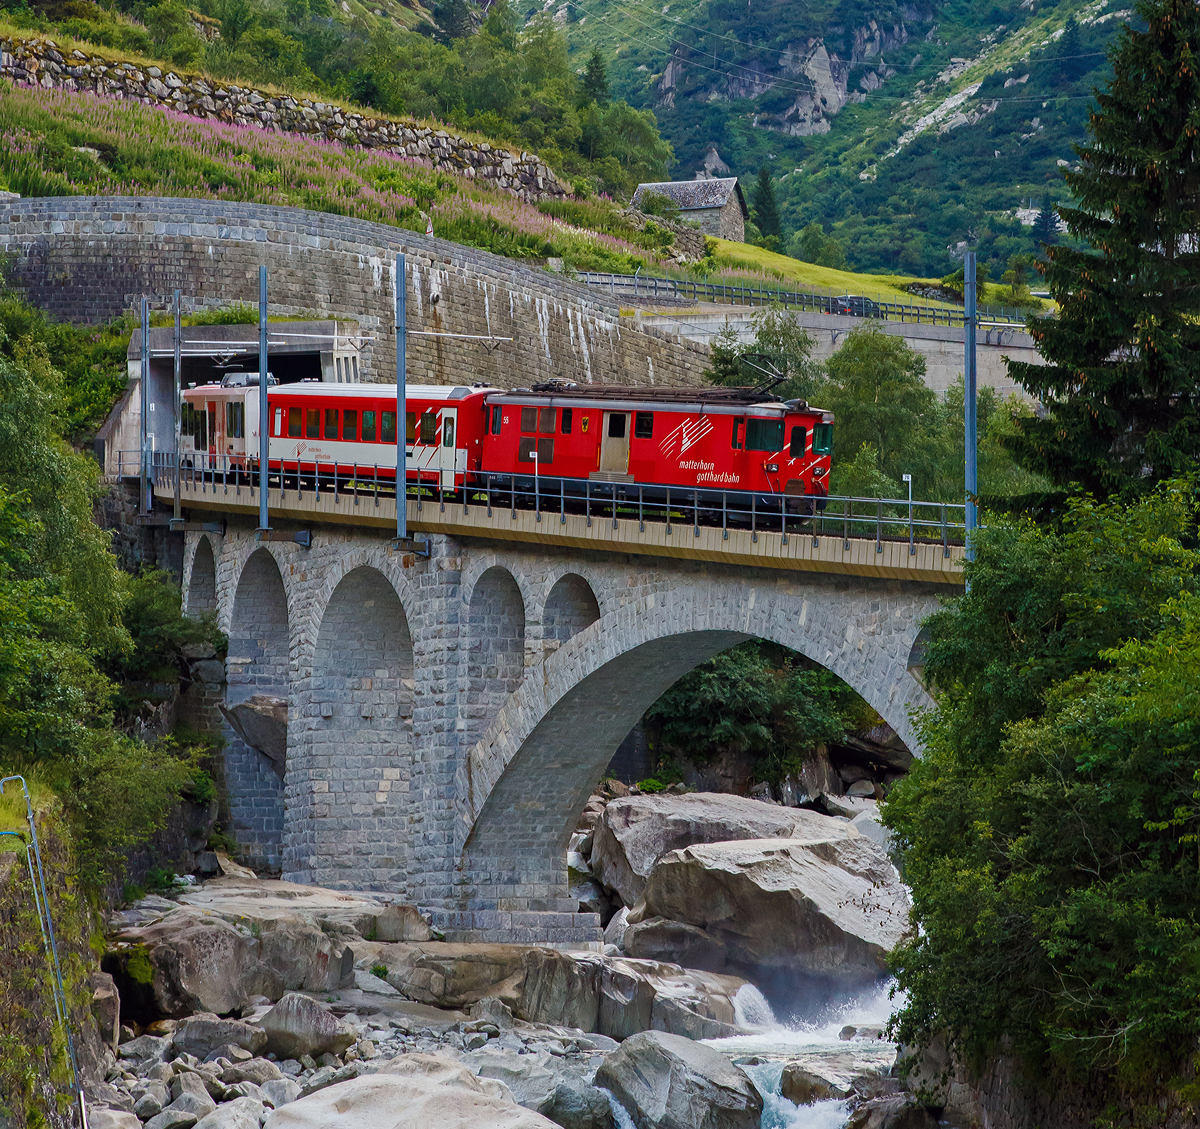 Die MGB Deh 4/4 – 55 „Brig“ schiebt am 01.08.2019 den Schllenenbahnzug von Gschenen  nach Andermatt nach hinauf und berquert hier gerade die Reuss. 

Die Strecke Gschenen–Andermatt ist die Schllenenbahn, eine einspurige Zahnradbahn (Zahnstangensystem Abt) im Schweizer Kanton Uri. Sie durchquert die Schllenenschlucht der Reuss und weist eine Maximalsteigung von 179 Promille auf, die steilste im MGB-Netz. Die Bahnstrecke wurde zwischen 1913 und 1917 durch die Schllenenbahn AG (SchB) gebaut. Die Schllenenbahn AG fusionierte 1961 mit der Furka-Oberalp-Bahn (FO), welche wiederum  zum 1. Januar 2003 mit der Zermatt-Bahn (BVZ), zur heutigen Matterhorn-Gotthard-Bahn (MG) fusionierte. 

Heute befrdert die Schllenenbahn im Jahr ca. 400.000 Reisende. Sie hatte in der Vergangenheit auch eine groe militrische Bedeutung. Sie versorgte die Festungsanlagen des Rduit im Gotthardmassiv. Die Bahnstrecke hat eine Gesamtlnge von 3.770 Metern, davon sind 2.509 mit Zahnstange ausgerstet. 1.022 Meter der Strecke befinden sich in Tunneln und 1.110 Meter in Galerien. Die Bahn fhrt durch fnf Tunnel und fnf schtzende Galerien. Vier Mal fhrt die meterspurige Schmalspurbahn ber eine Brcke.

Auf der Schllenenbahn wurden ursprnglich vier zweiachsige Elektrolokomotiven fr kombinierten Adhsions- und Zahnradbetrieb von SLM und BBC mit Bezeichnung SchB HGe 2/2 eingesetzt. Ursprnglich liefen sie mit 1.200 Volt Gleichstrom. 1941 wurden sie auf 11.000 Volt Wechselstrom umgestellt. Die letzte dieser vier Lokomotiven wurde 1985 Spter kamen kamen FO BCFhe 2/4 der Schweizerischen Lokomotiv- und Maschinenfabrik mit einem Antrieb der BBC zum Einsatz. ausrangiert. Heute (2019) befahren Deh 4/4 und Wagen der Matterhorn-Gotthard-Bahn die Strecke. Dabei befindet sich das Triebfahrzeug stets am talseitigen Ende, am Zugschluss luft ein Steuerwagen.

Die Schllenenbahn bietet einen stndlichen Pendelverkehr an und ist in den Fahrplan der SBB und der Matterhorn-Gotthard-Bahn vollstndig integriert.